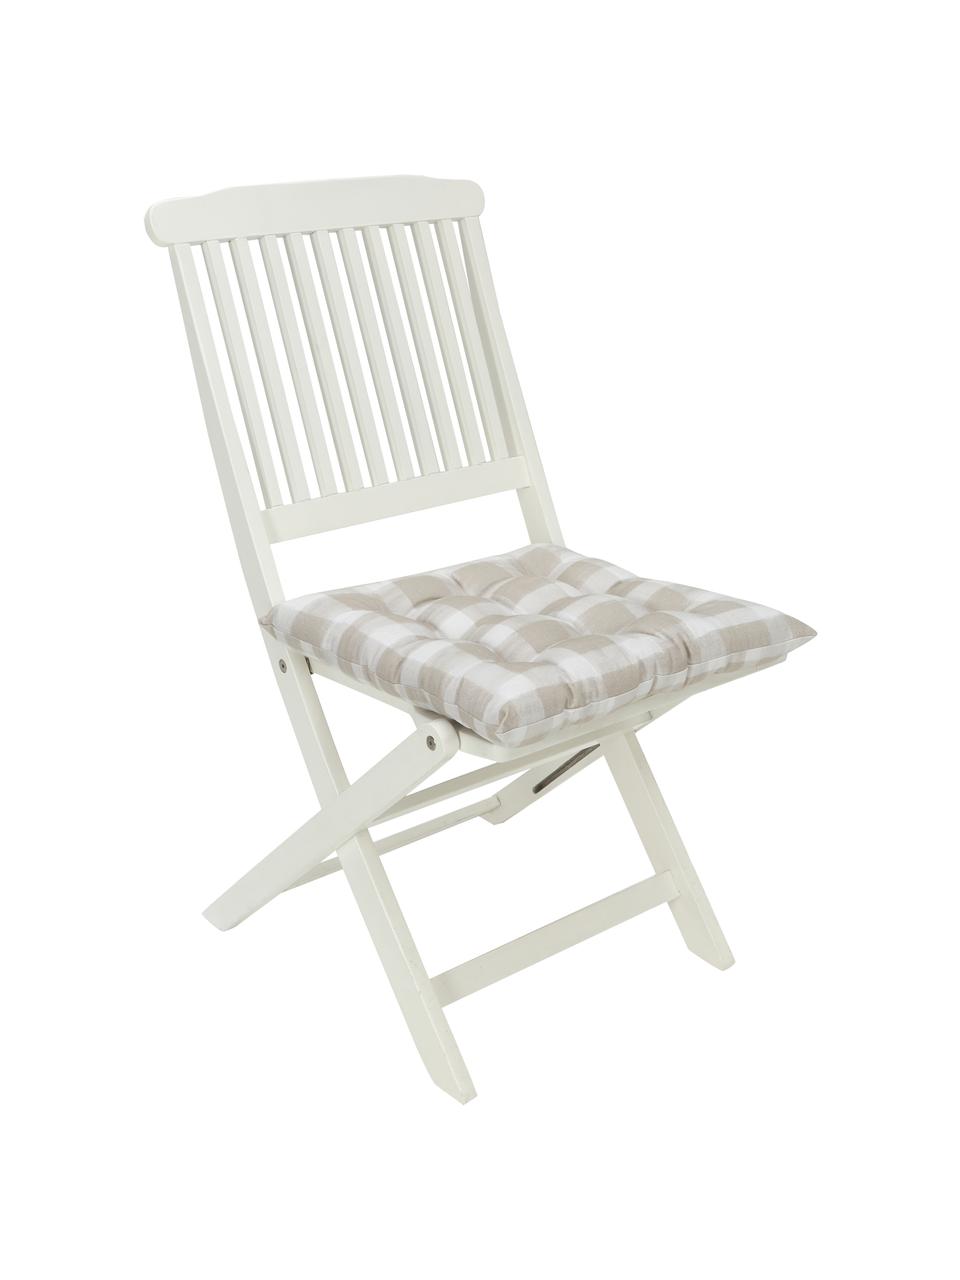 Kariertes Baumwoll-Sitzkissen Milène, Bezug: 100% Baumwolle, Beige, Weiß, B 40 x L 40 cm